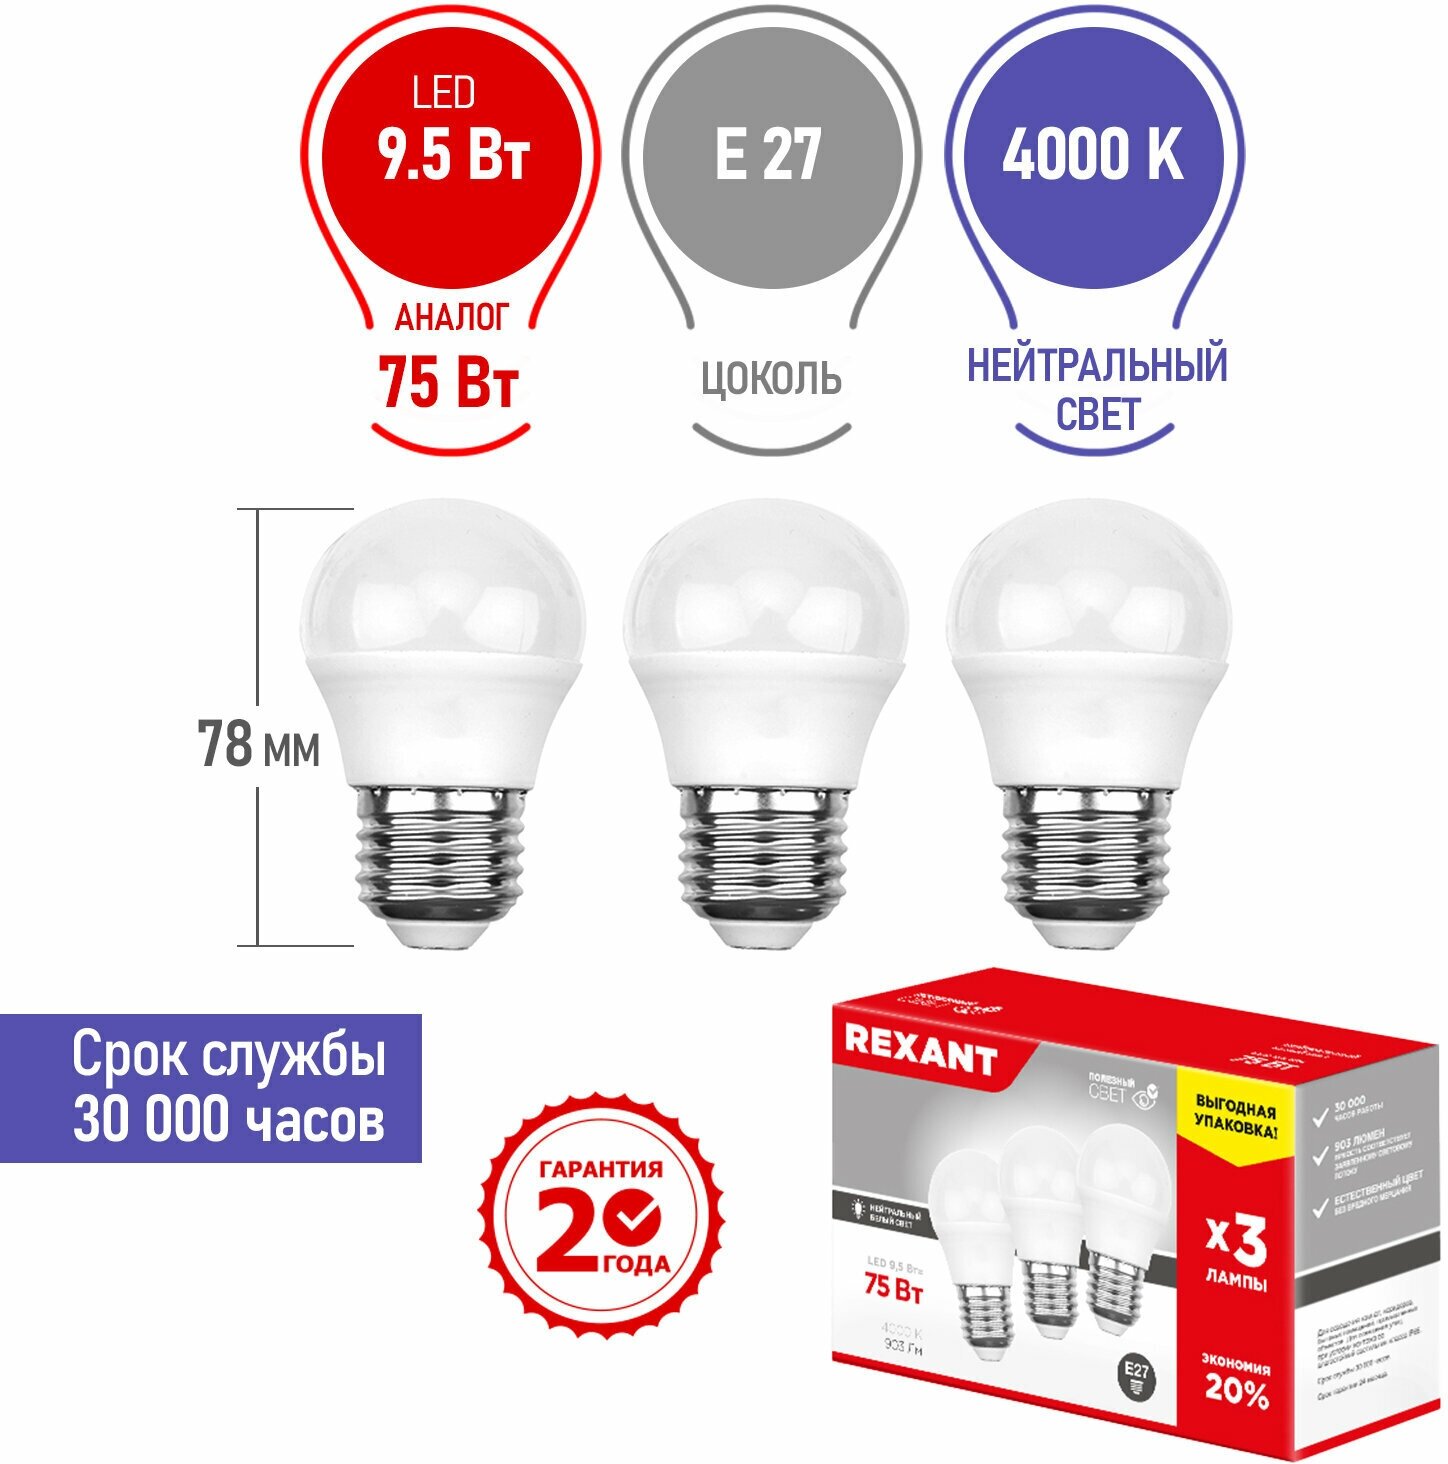 Лампочка E27, светодиодная, набор, Шарик (GL) LED 9,5 Вт, Яркость 903Лм, 4000 K нейтральное свечение, в комплекте 3 штуки